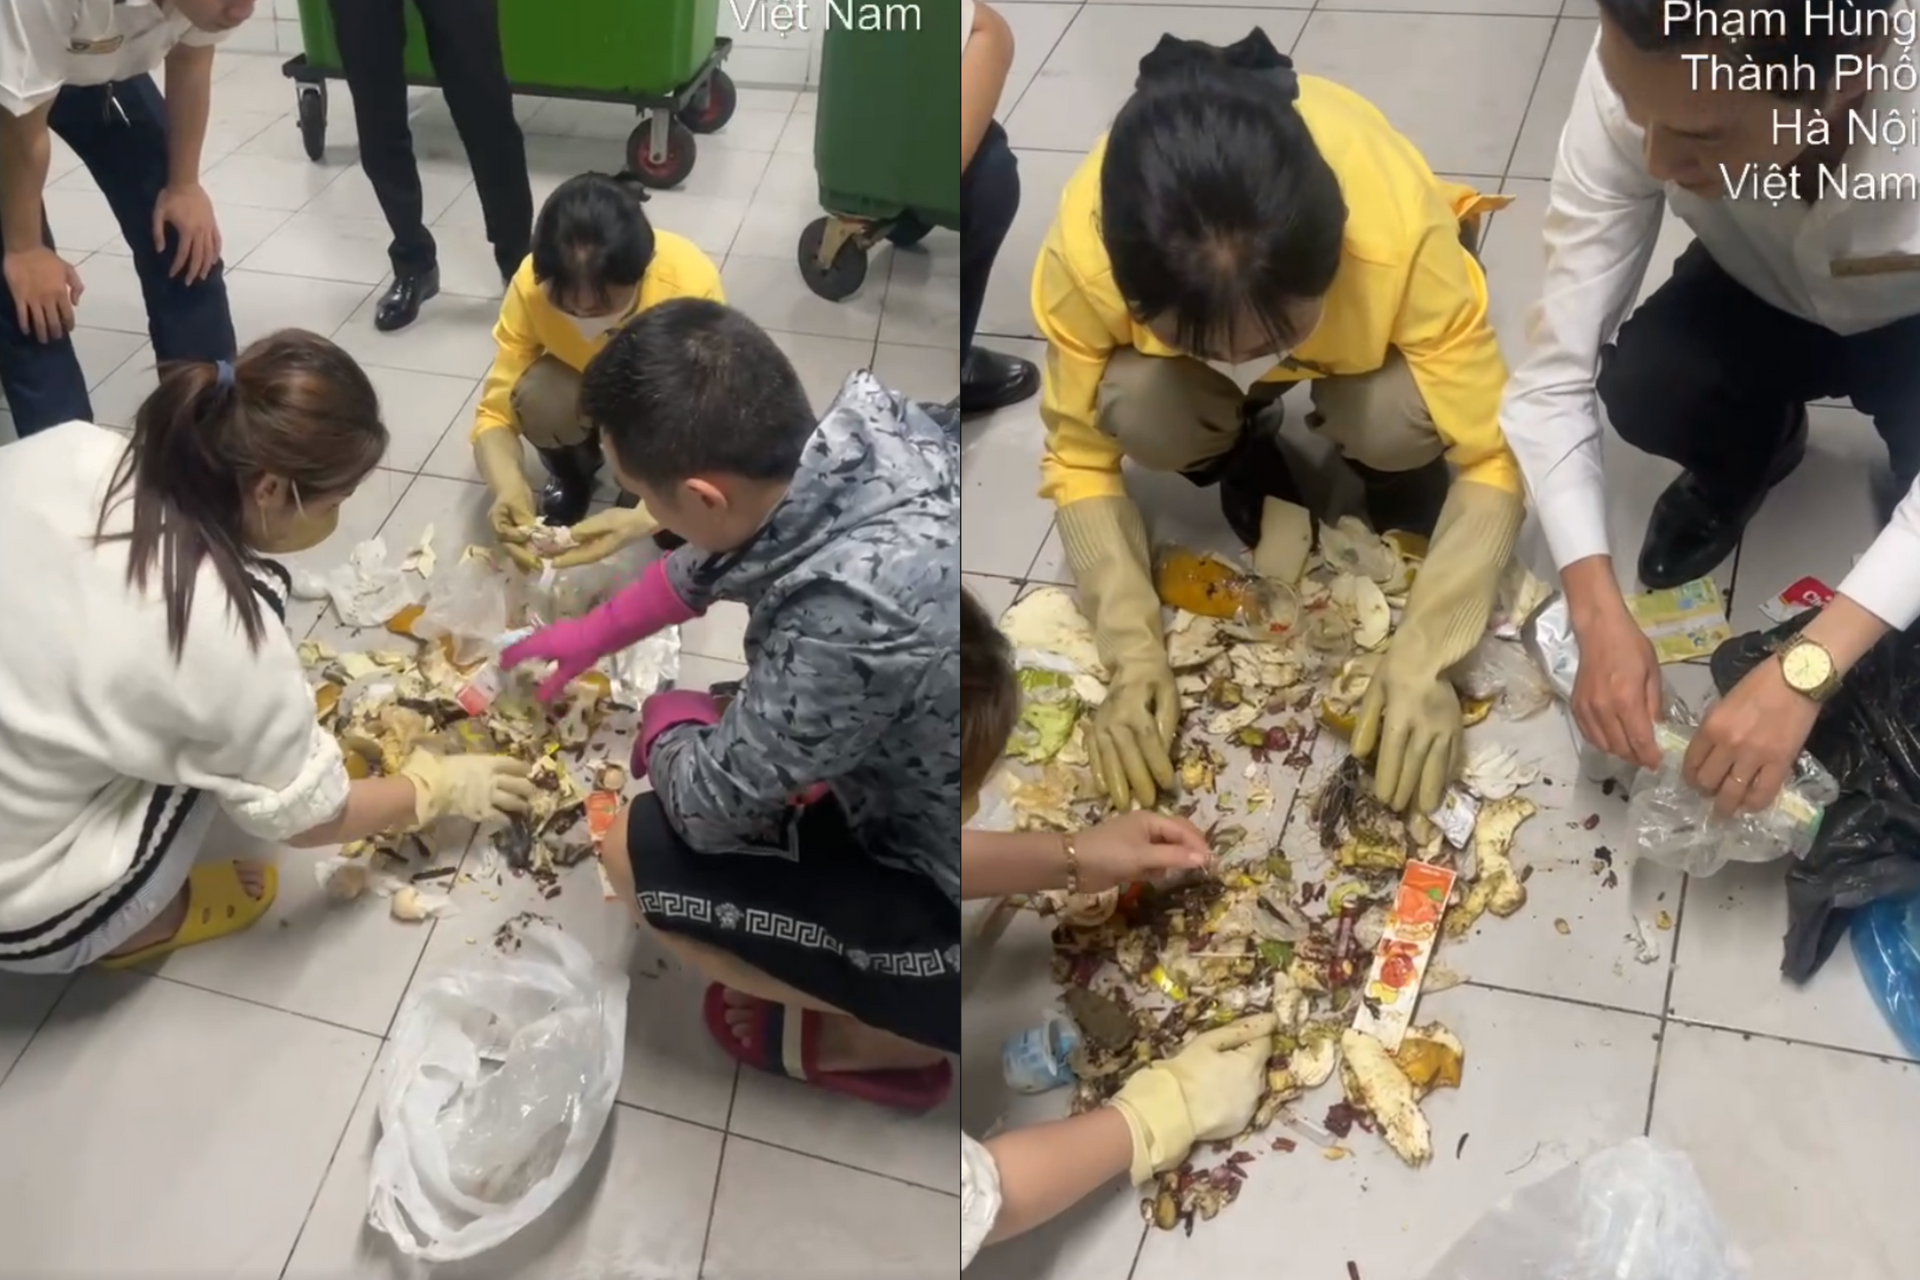 Hà Nội: Vợ để kim cương trong bọc giấy, chồng tưởng rác đi vứt và cái kết - 2